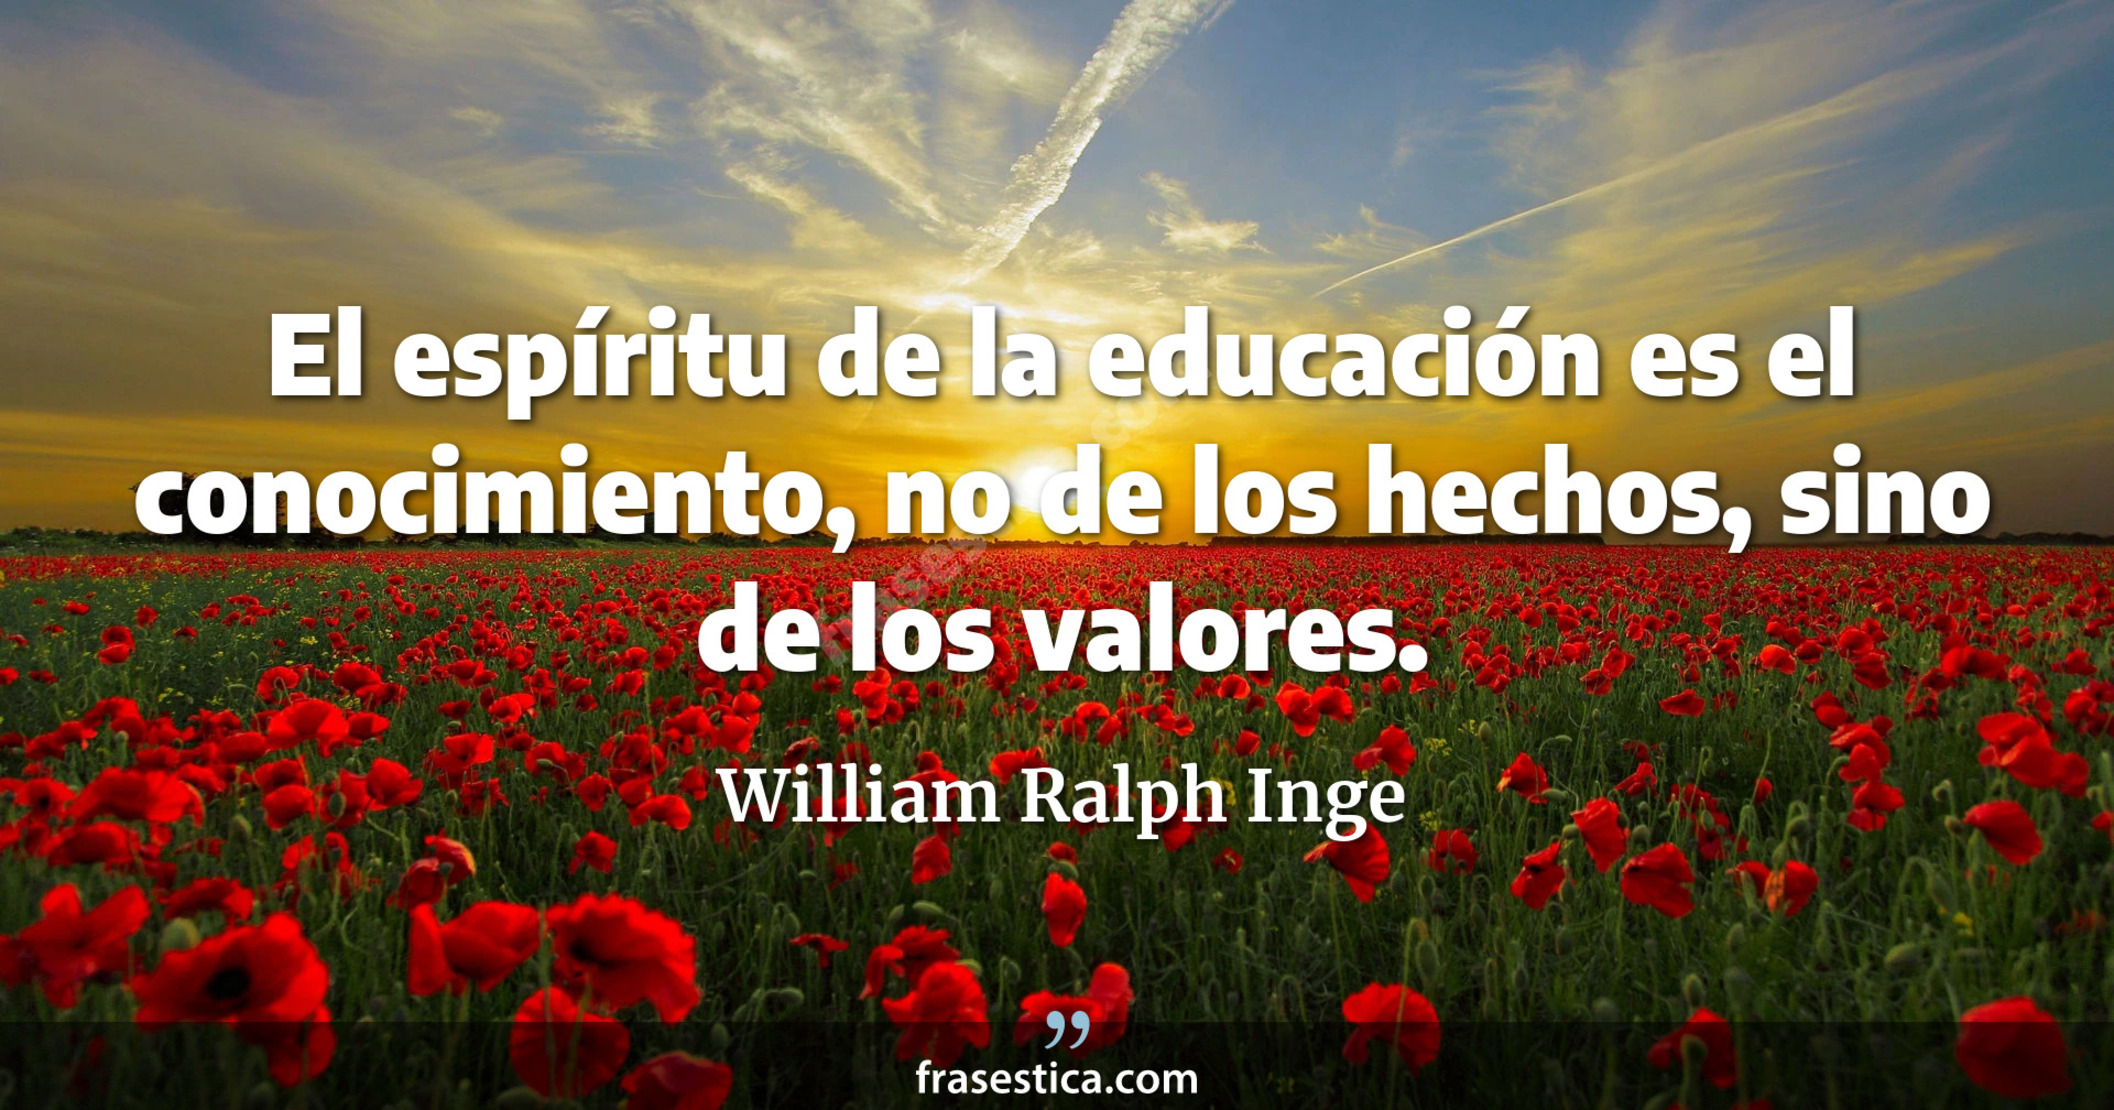 El espíritu de la educación es el conocimiento, no de los hechos, sino de los valores. - William Ralph Inge